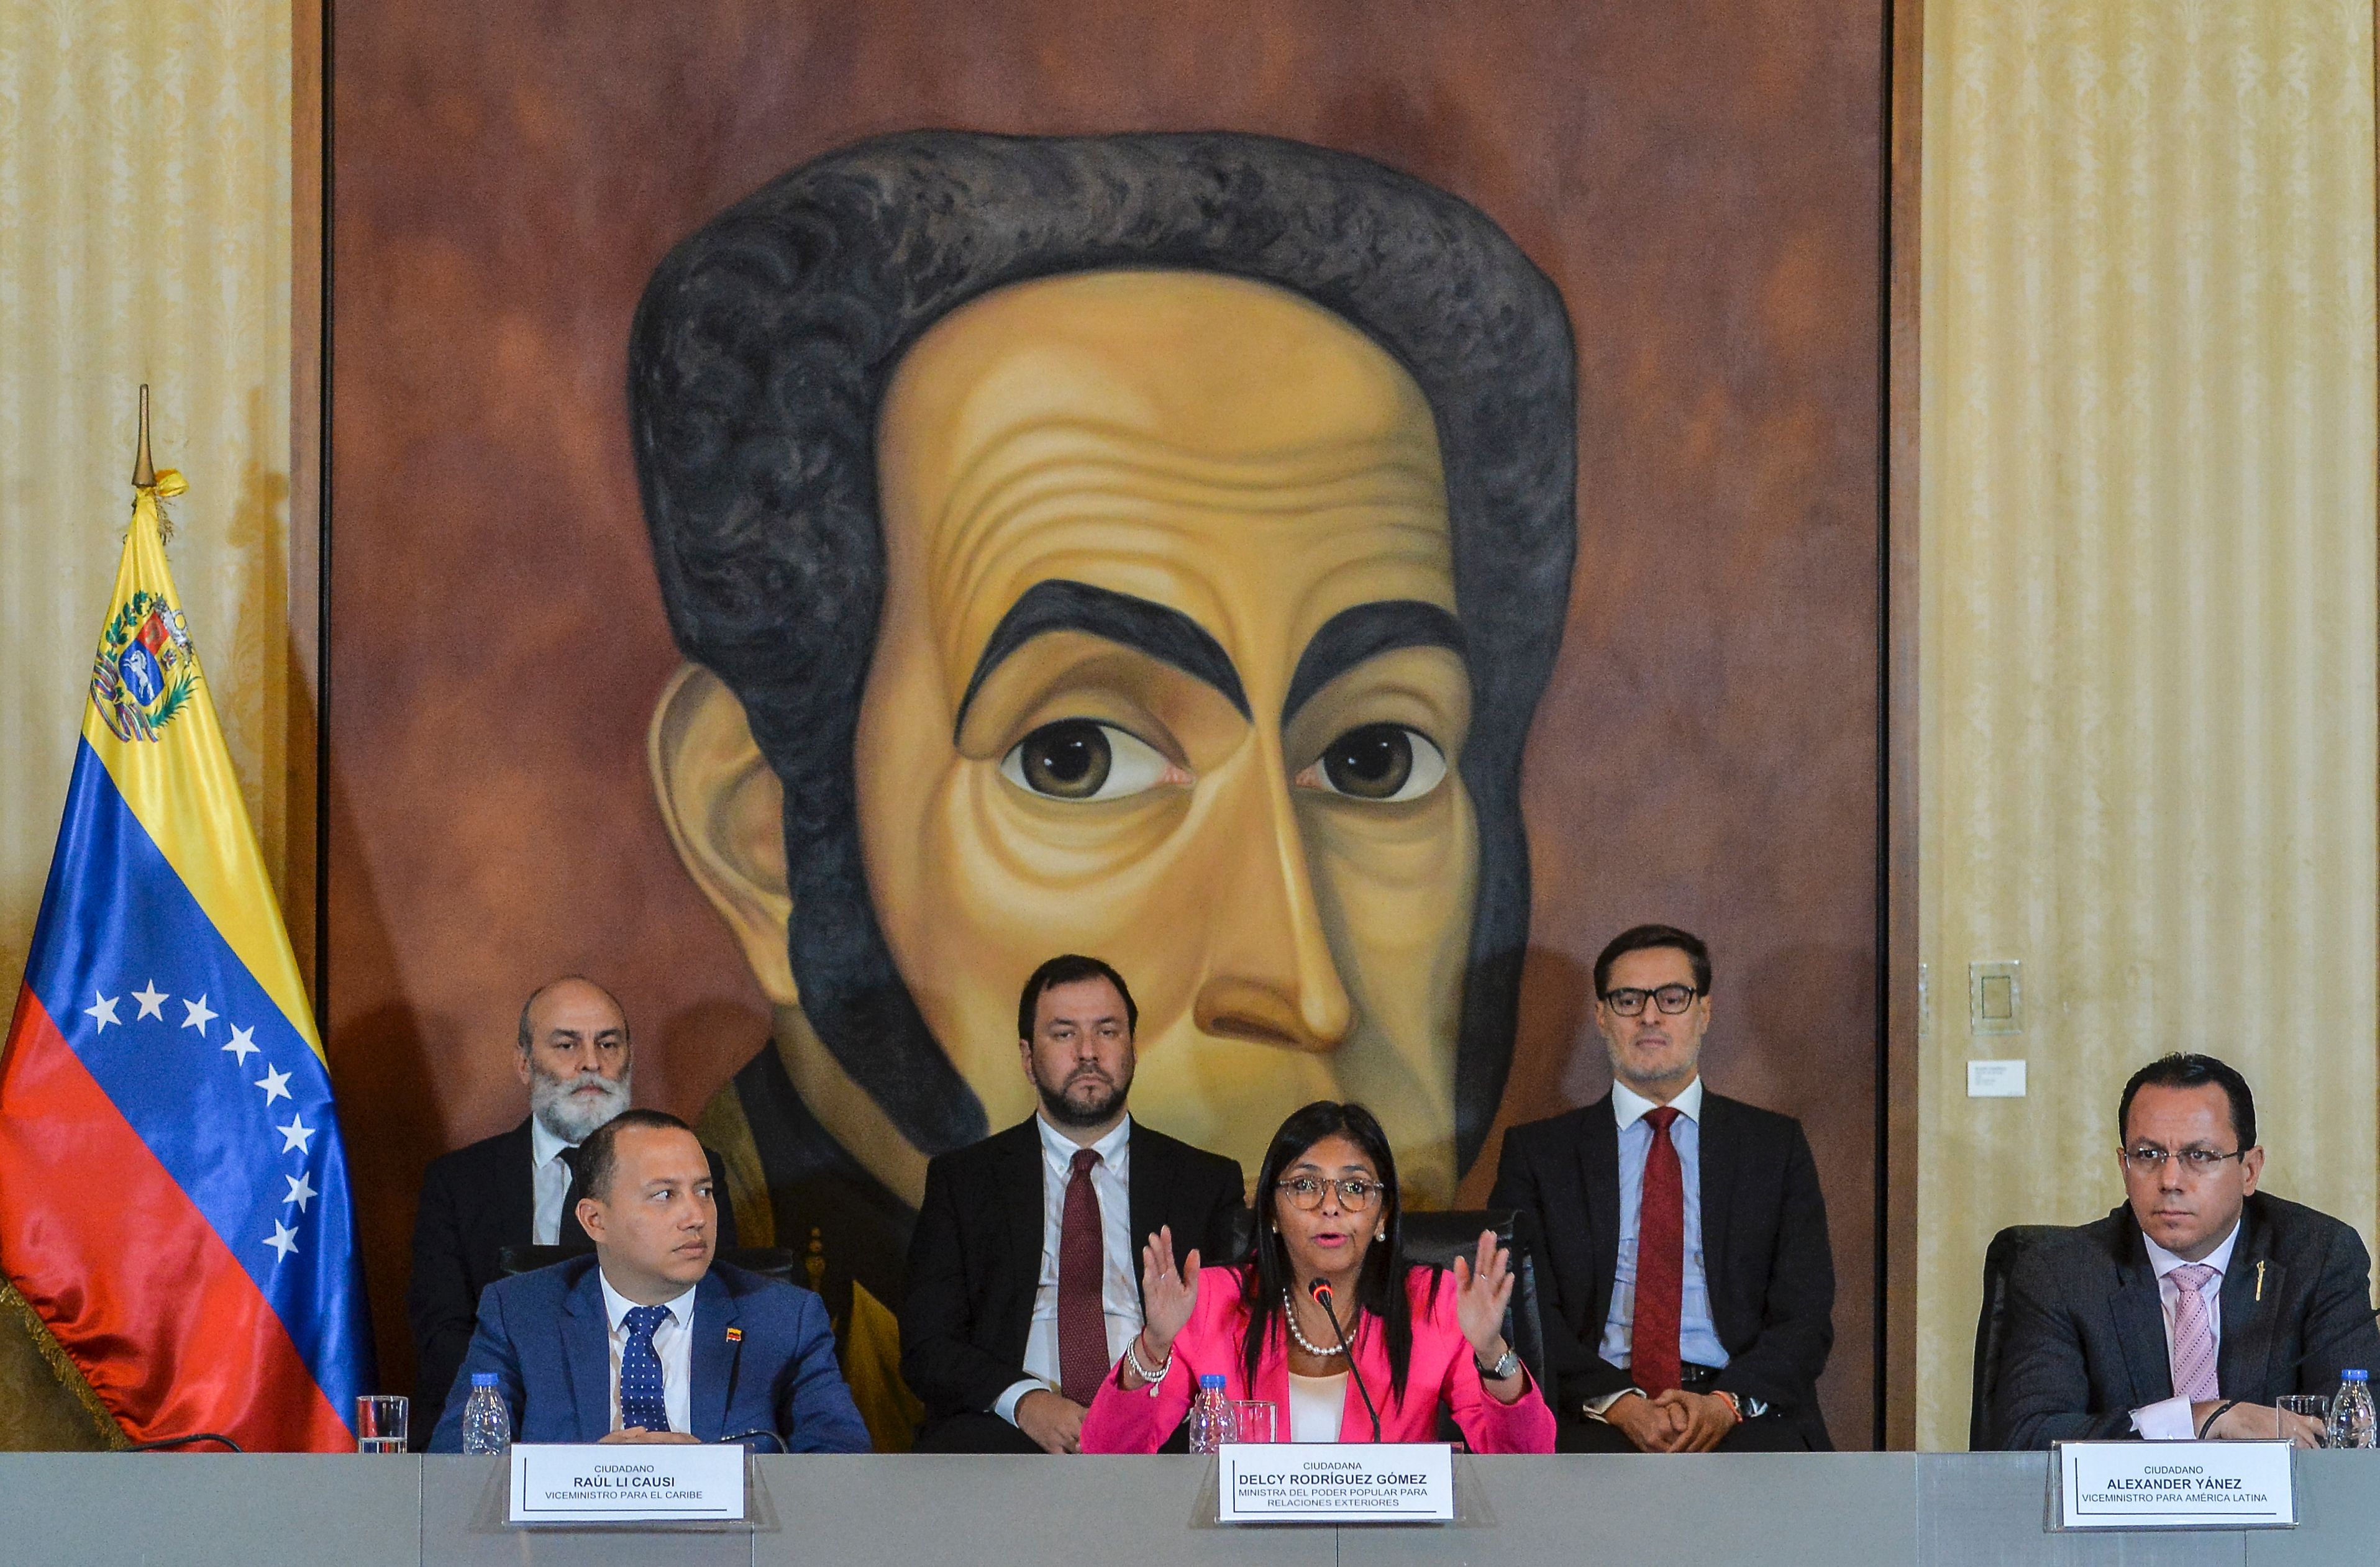 Saque sus fúnebres manos de aquí: canciller venezolana a presidente de Perú